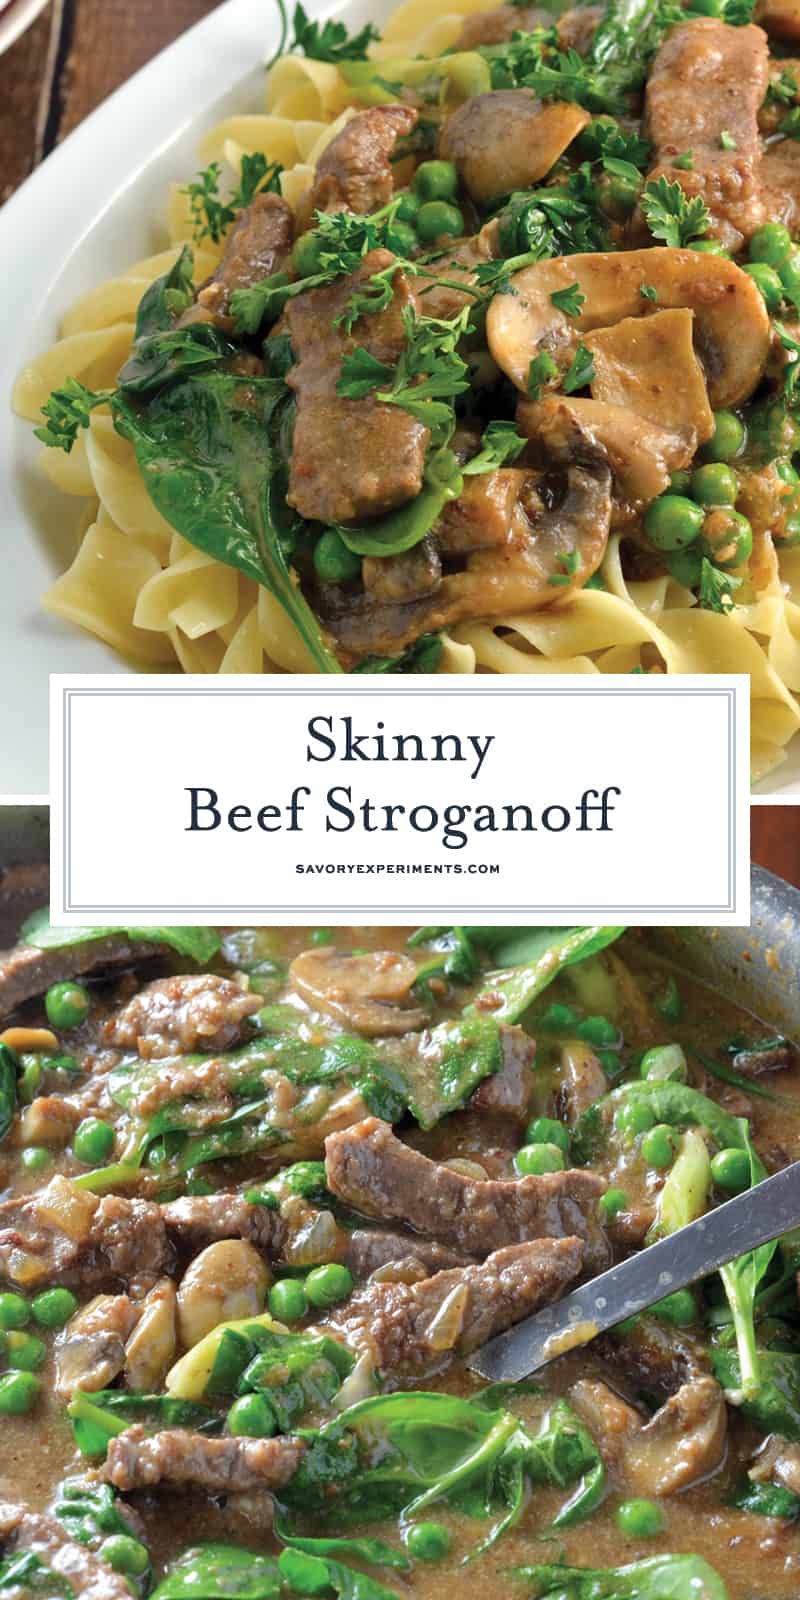 Skinny Beef Stroganoff folosiți un ingredient secret pentru a face acest lucru într-un fel de mâncare cremoasă cu conținut scăzut de calorii. Adăugați mazăre și spanac pentru legume suplimentare! # beefstroganoff www.savoryexperiments.com 